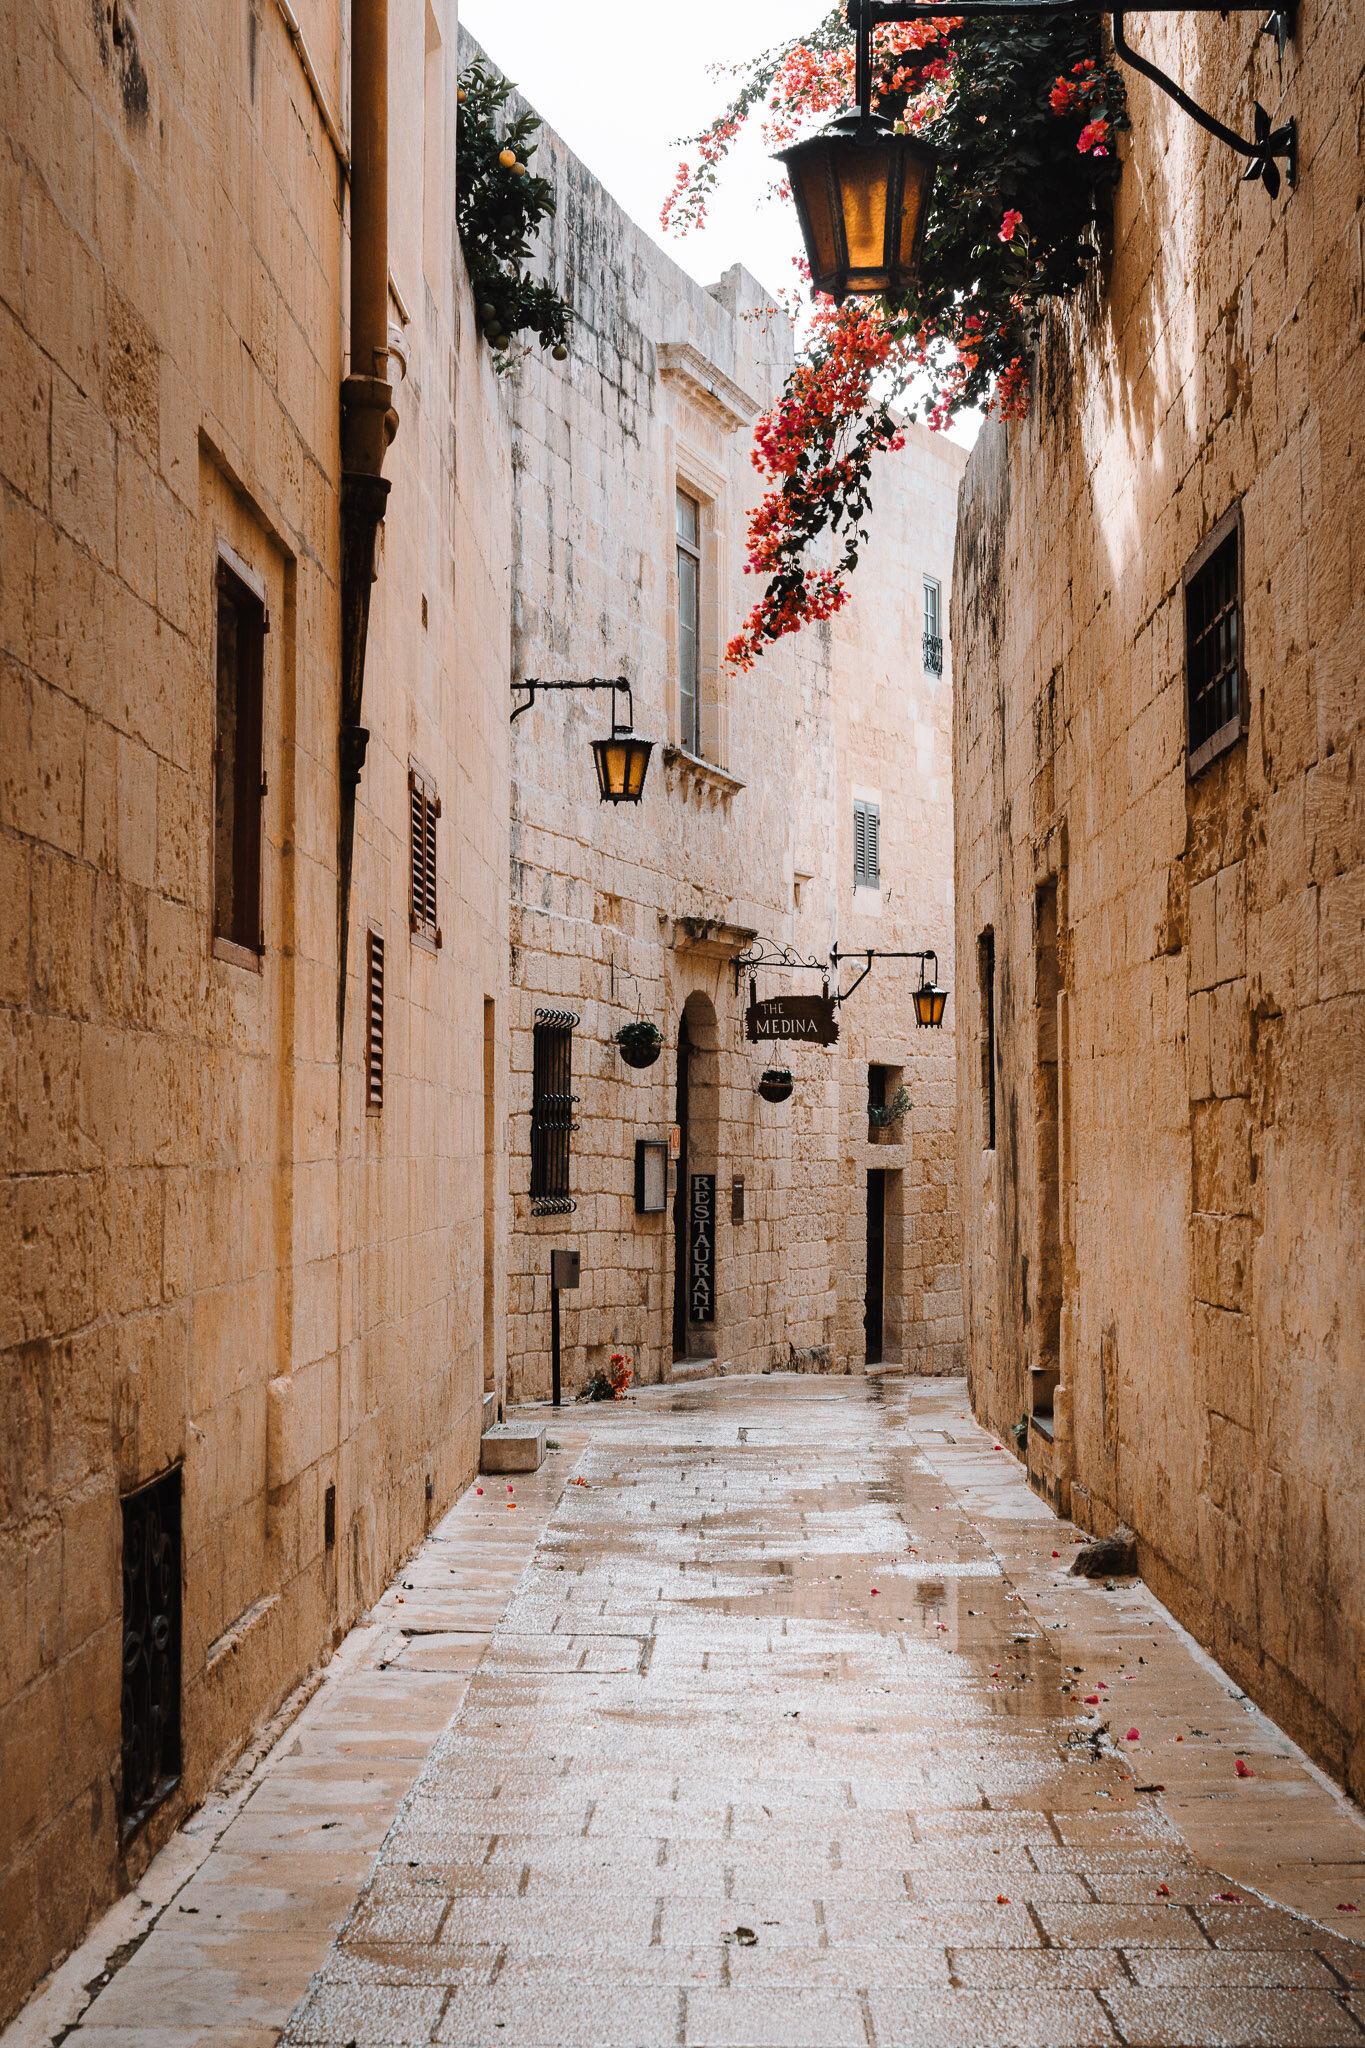 Alexmj-onthego-Visiter Malte-Mdina-rue-etroite.jpg